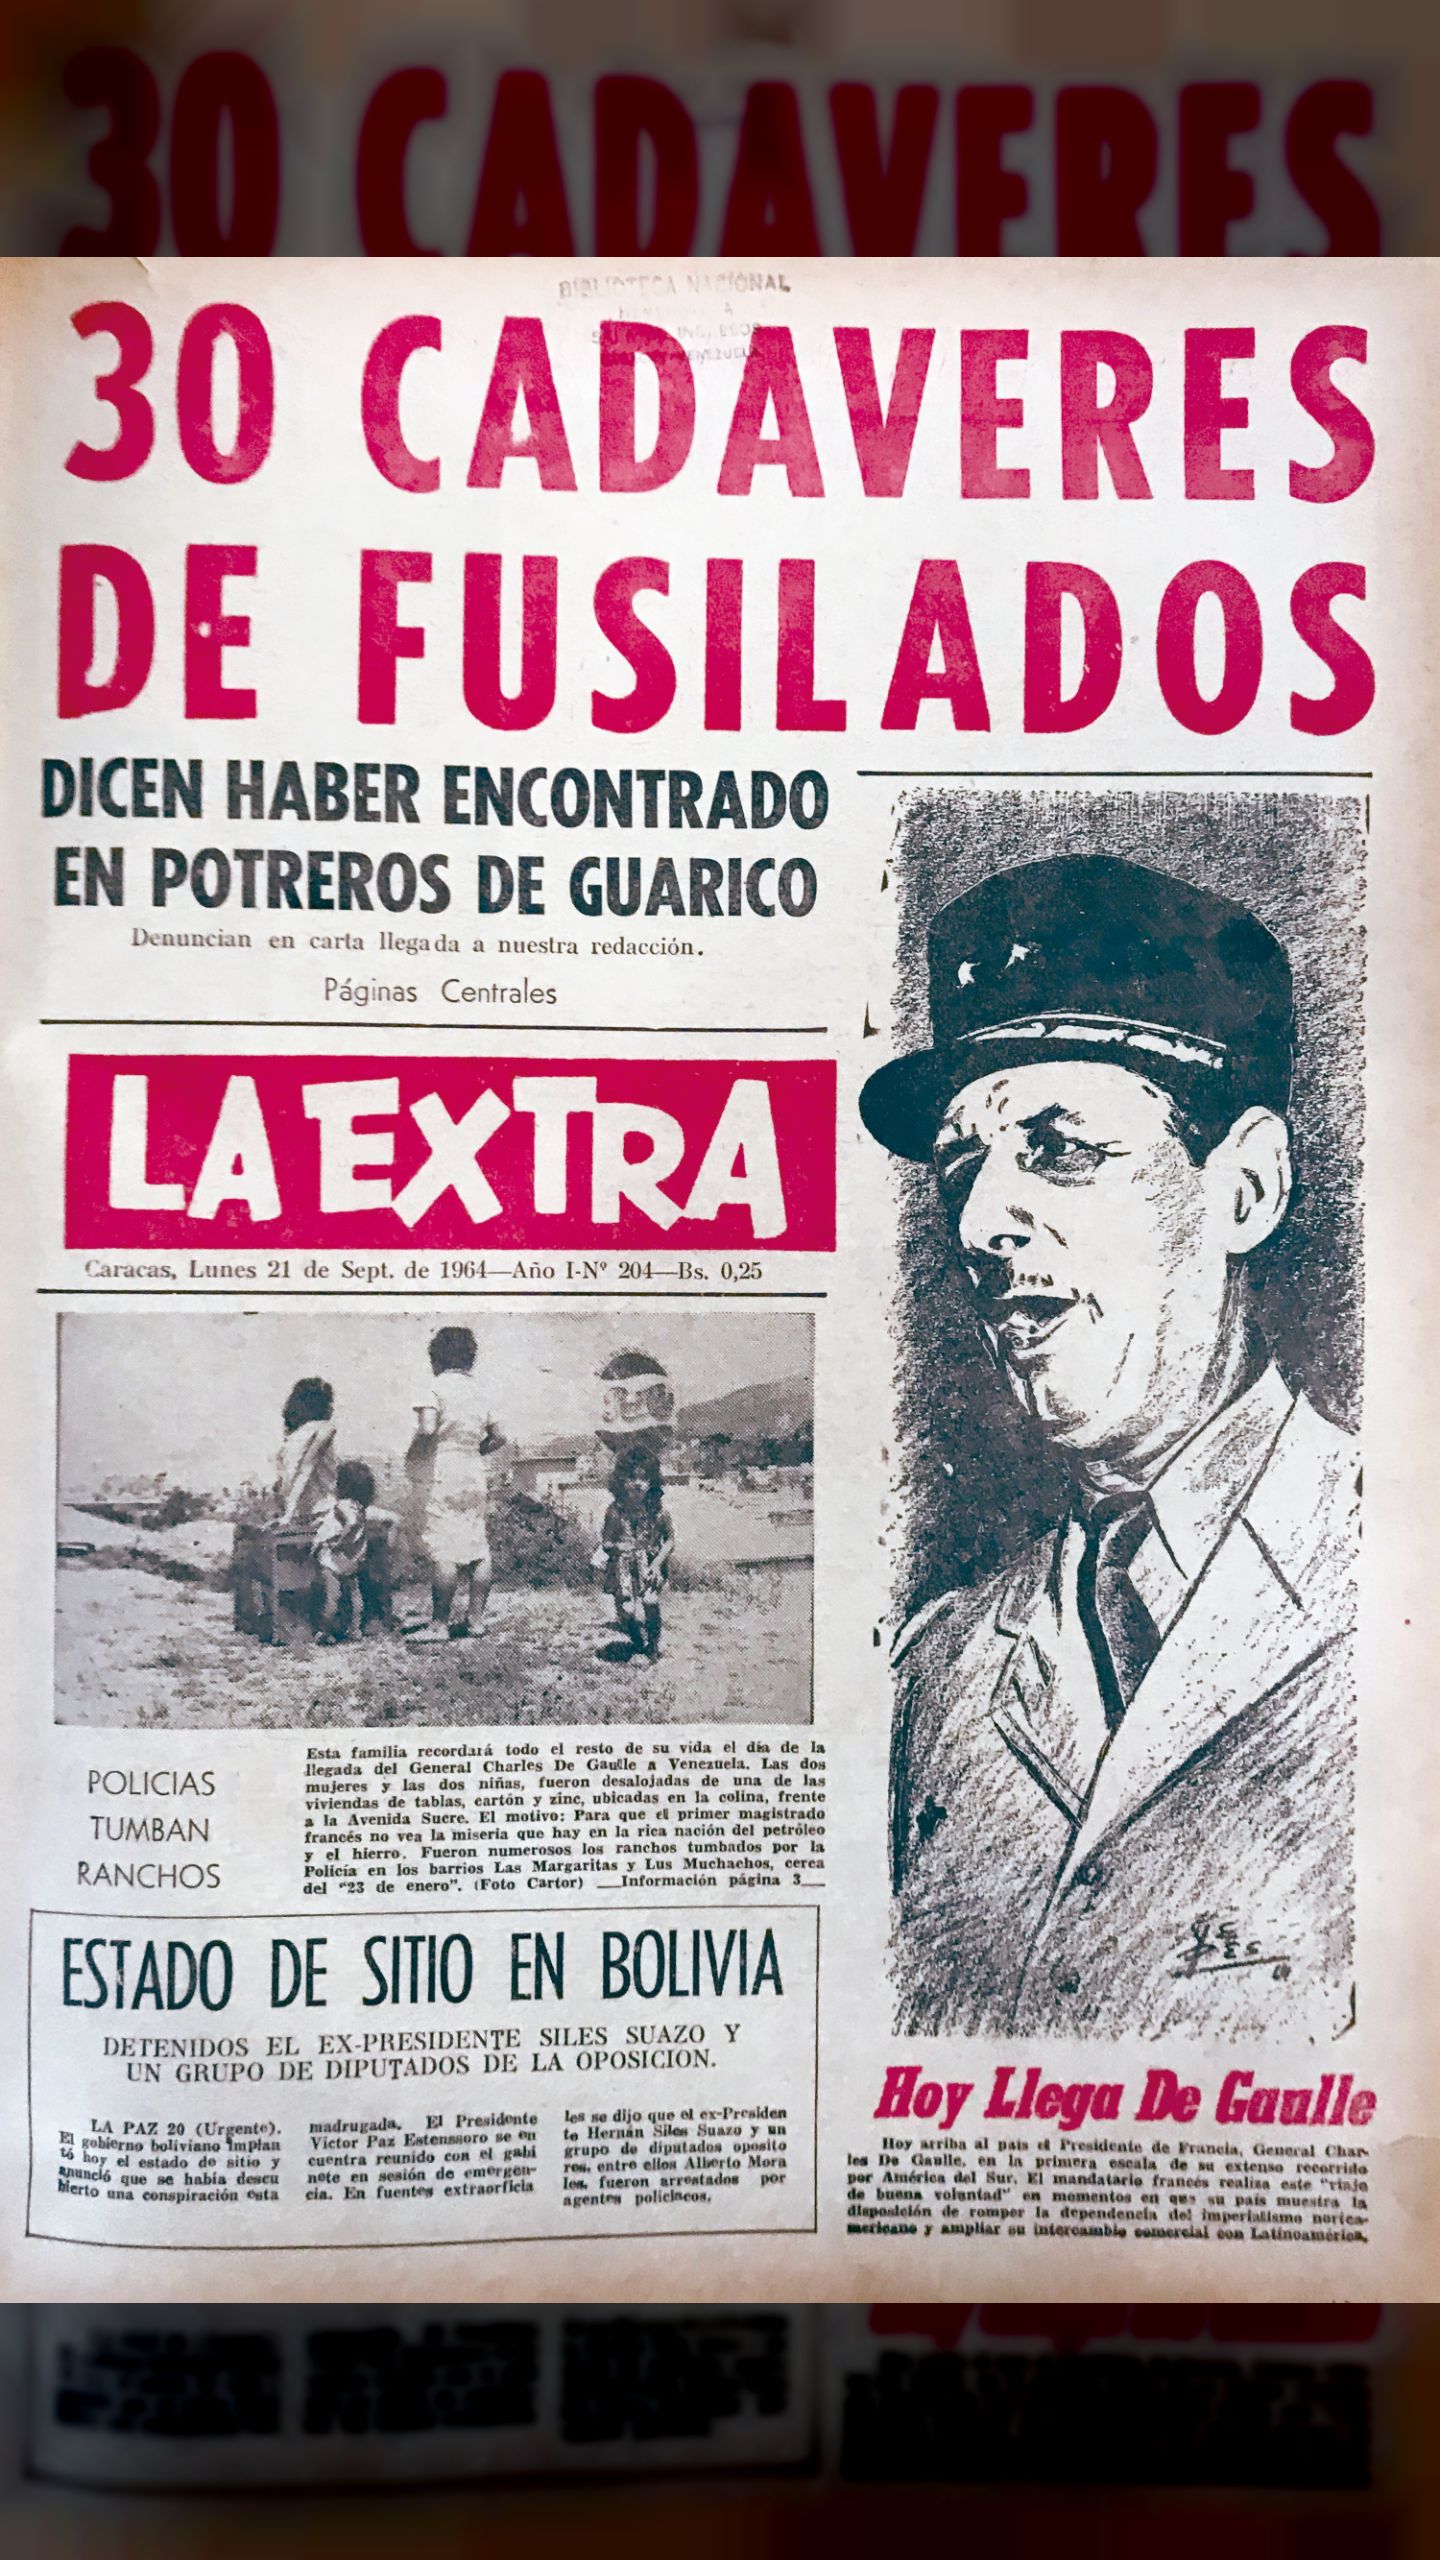 30 cadáveres de fusilados dicen haber encontrado en Guárico (La Extra, 21 de septiembre 1964)